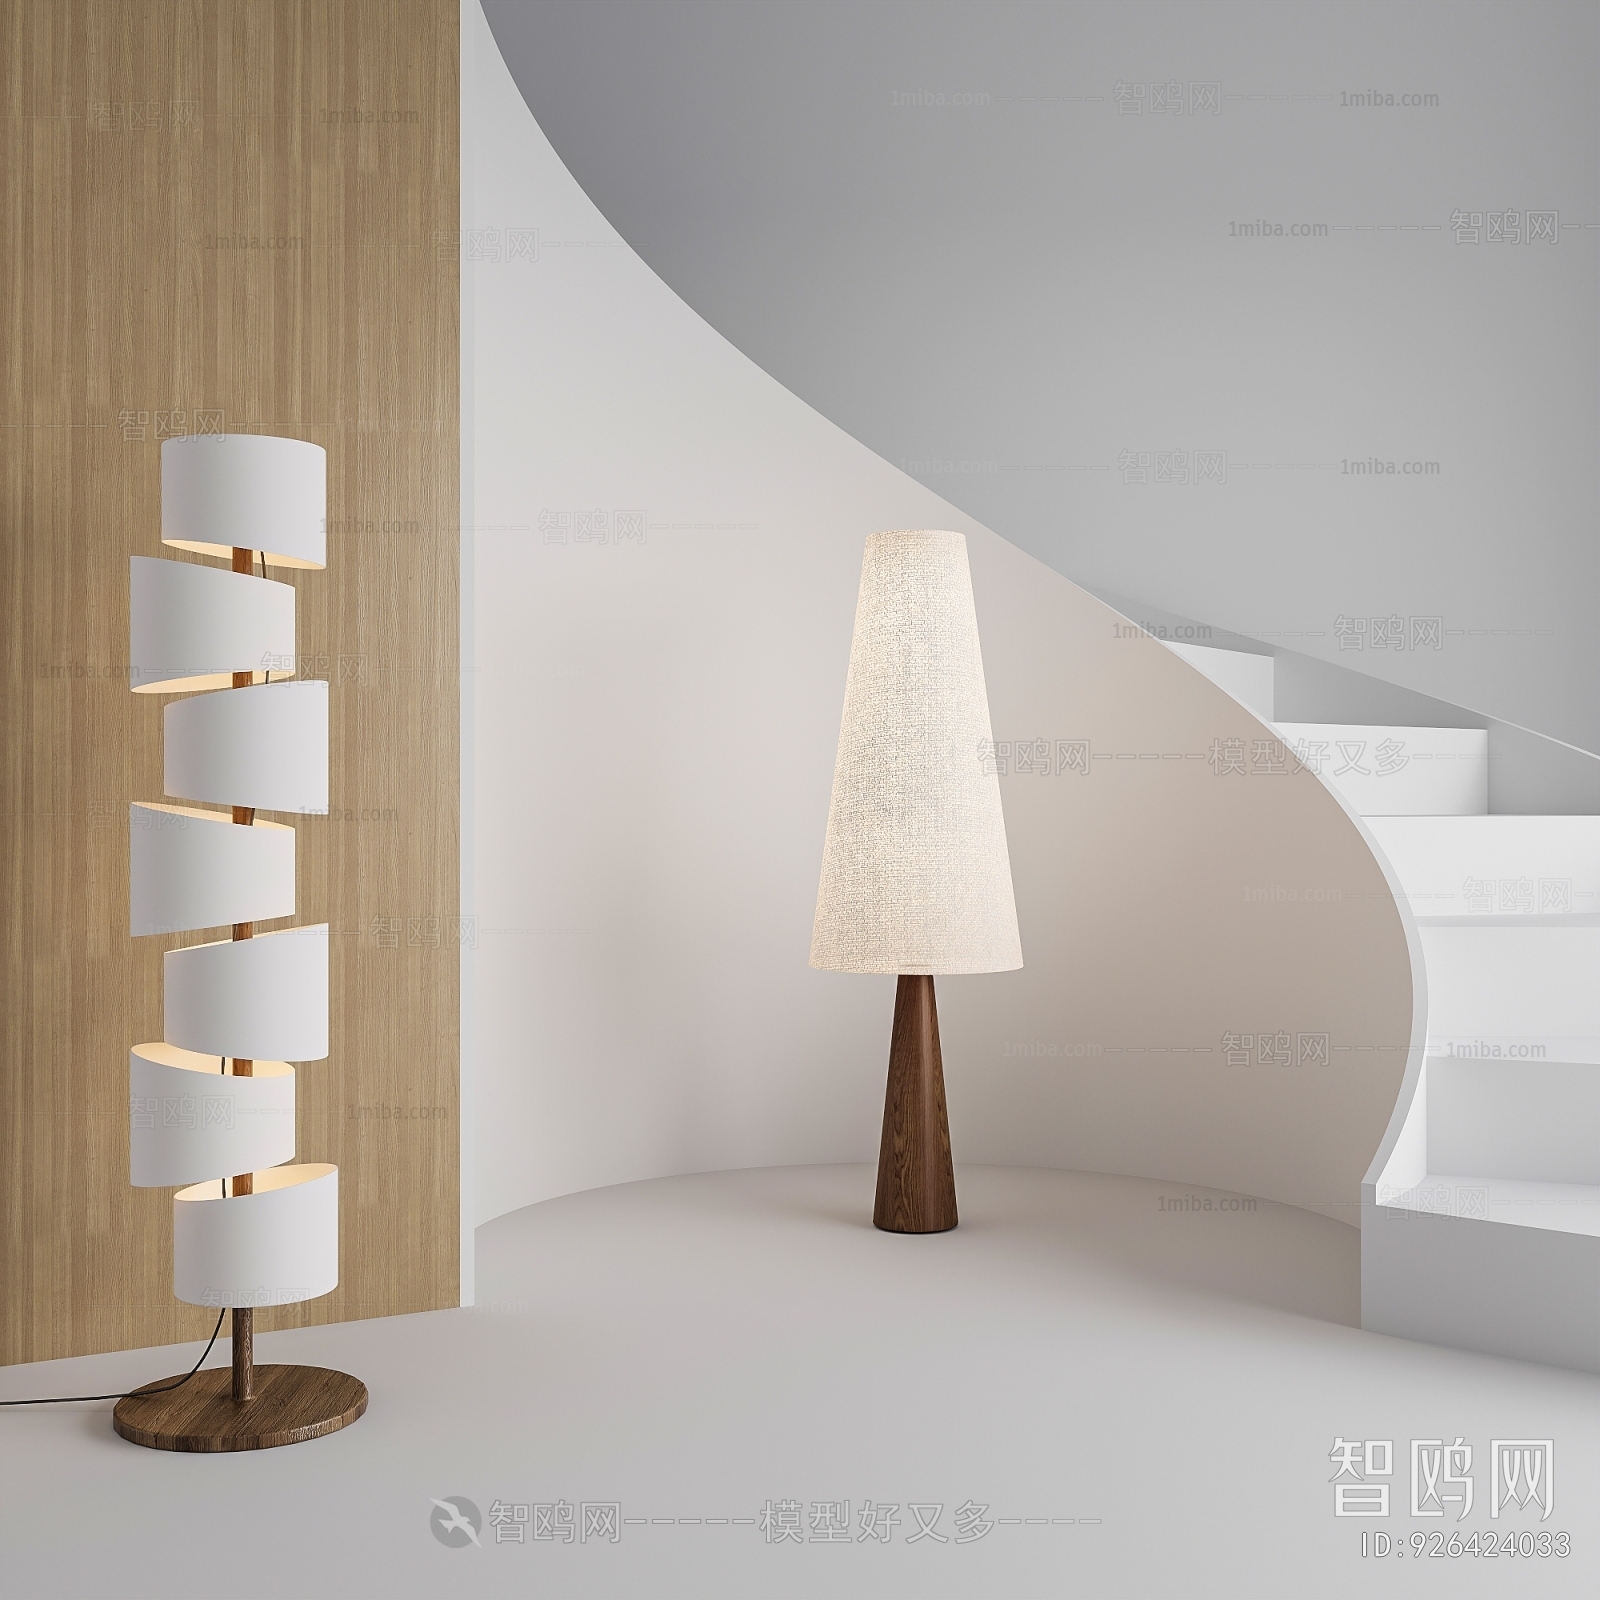 Wabi-sabi Style Floor Lamp